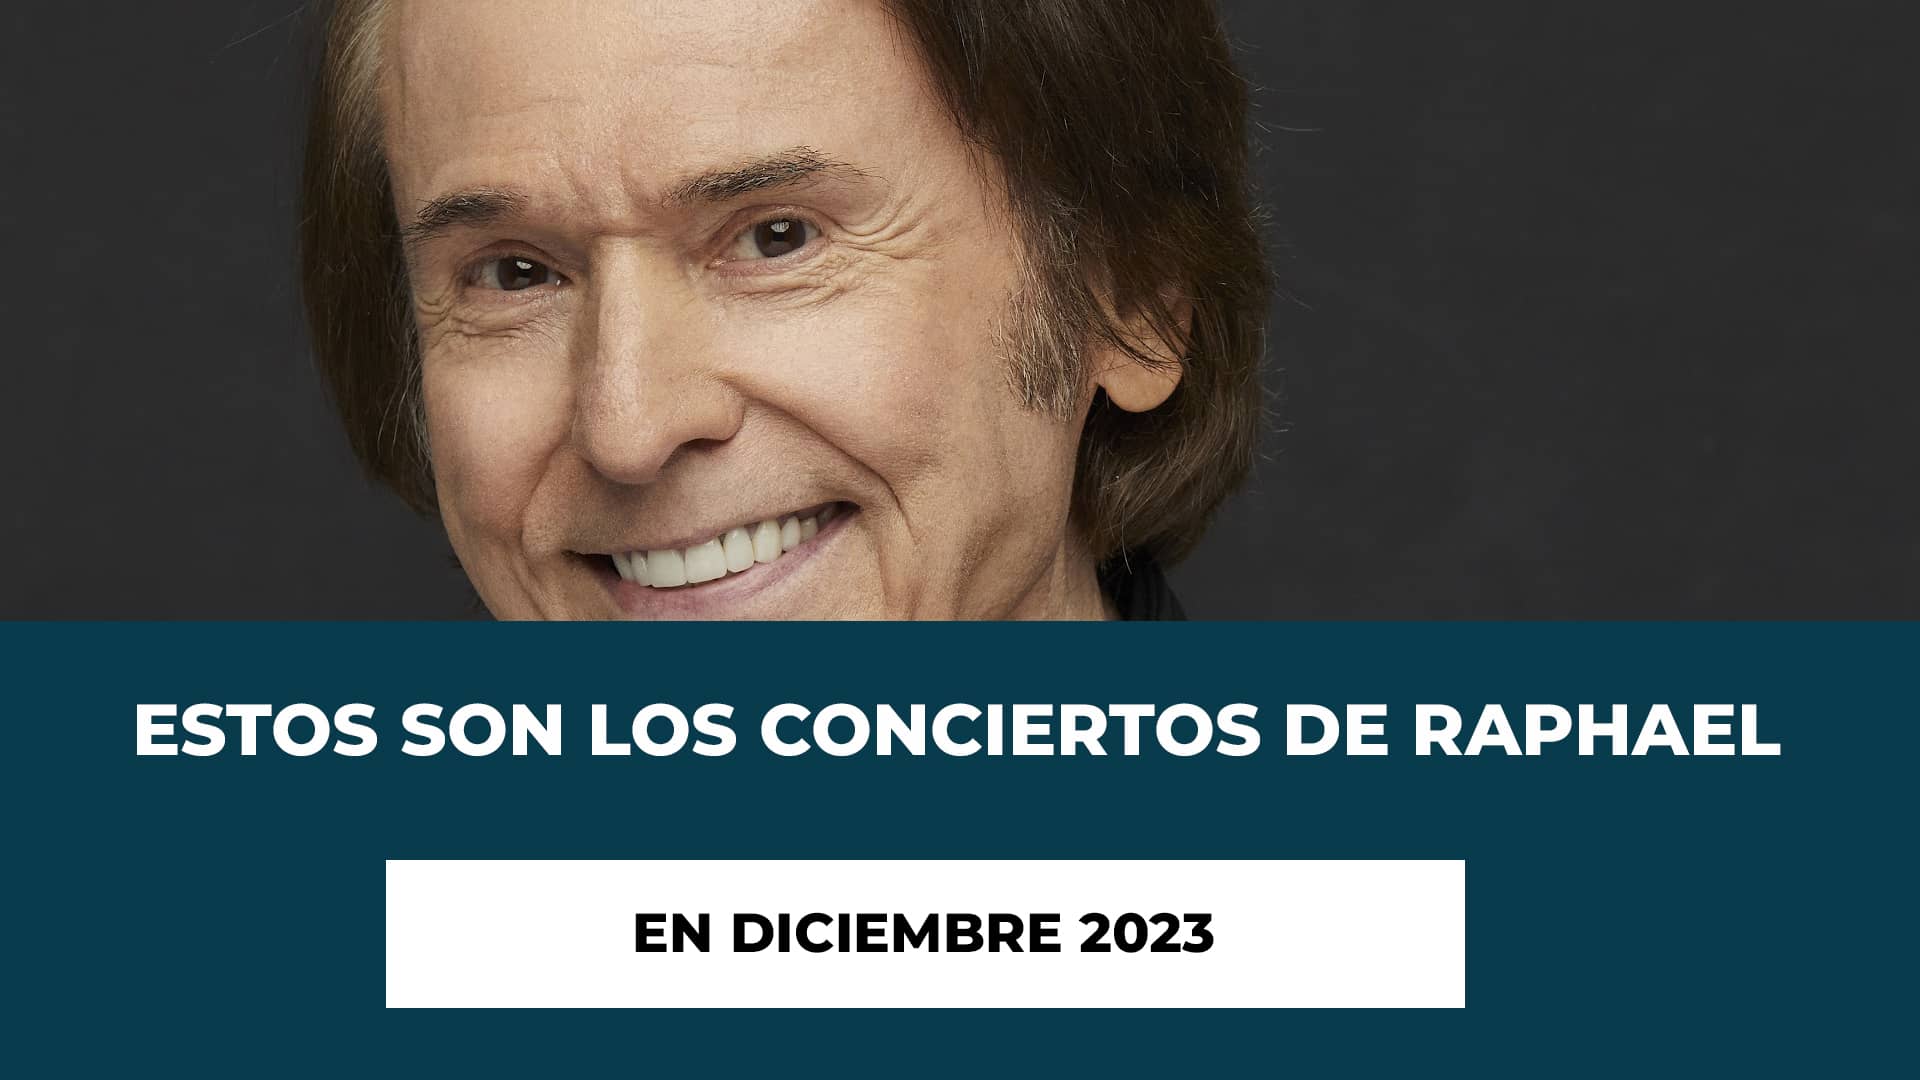 Estos son los Conciertos de Raphael en Diciembre 2023 - Últimas fechas del año 2023 - Información Importante - Consejos para Asistir